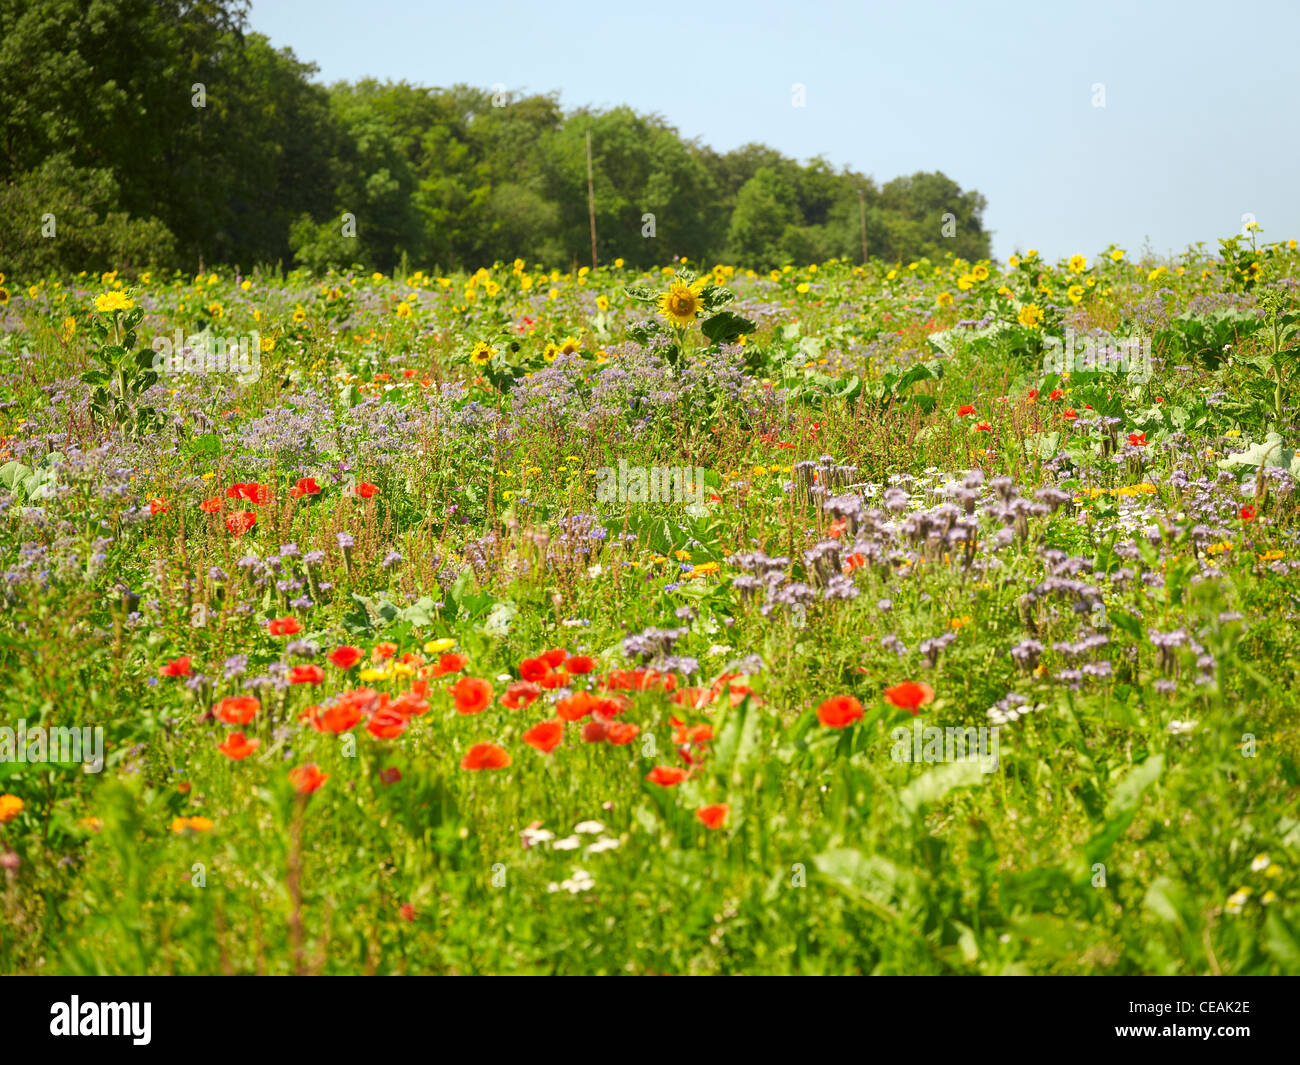 Prairie en fleurs près de la lisière de la forêt avec beaucoup de différentes herbes et fleurs dans une ambiance ensoleillée Banque D'Images